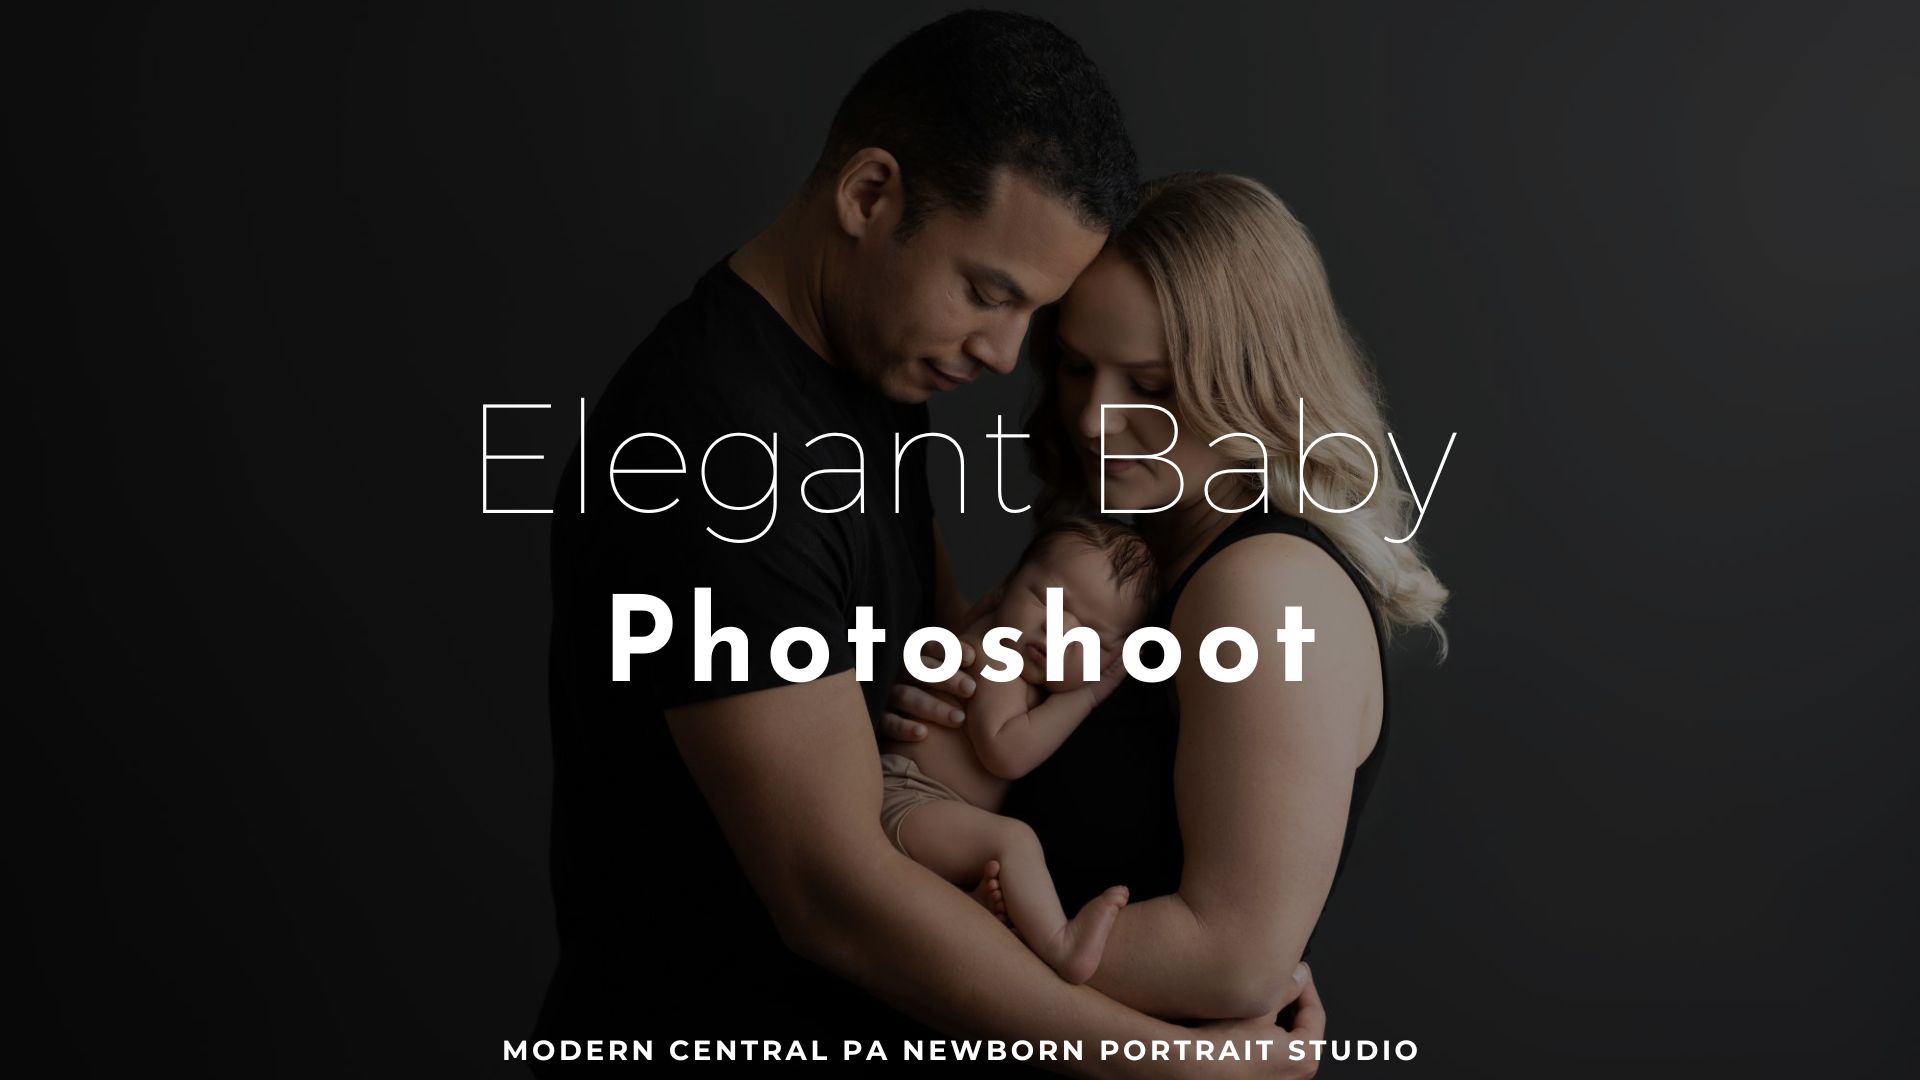 elegant baby photoshoot featured image blog